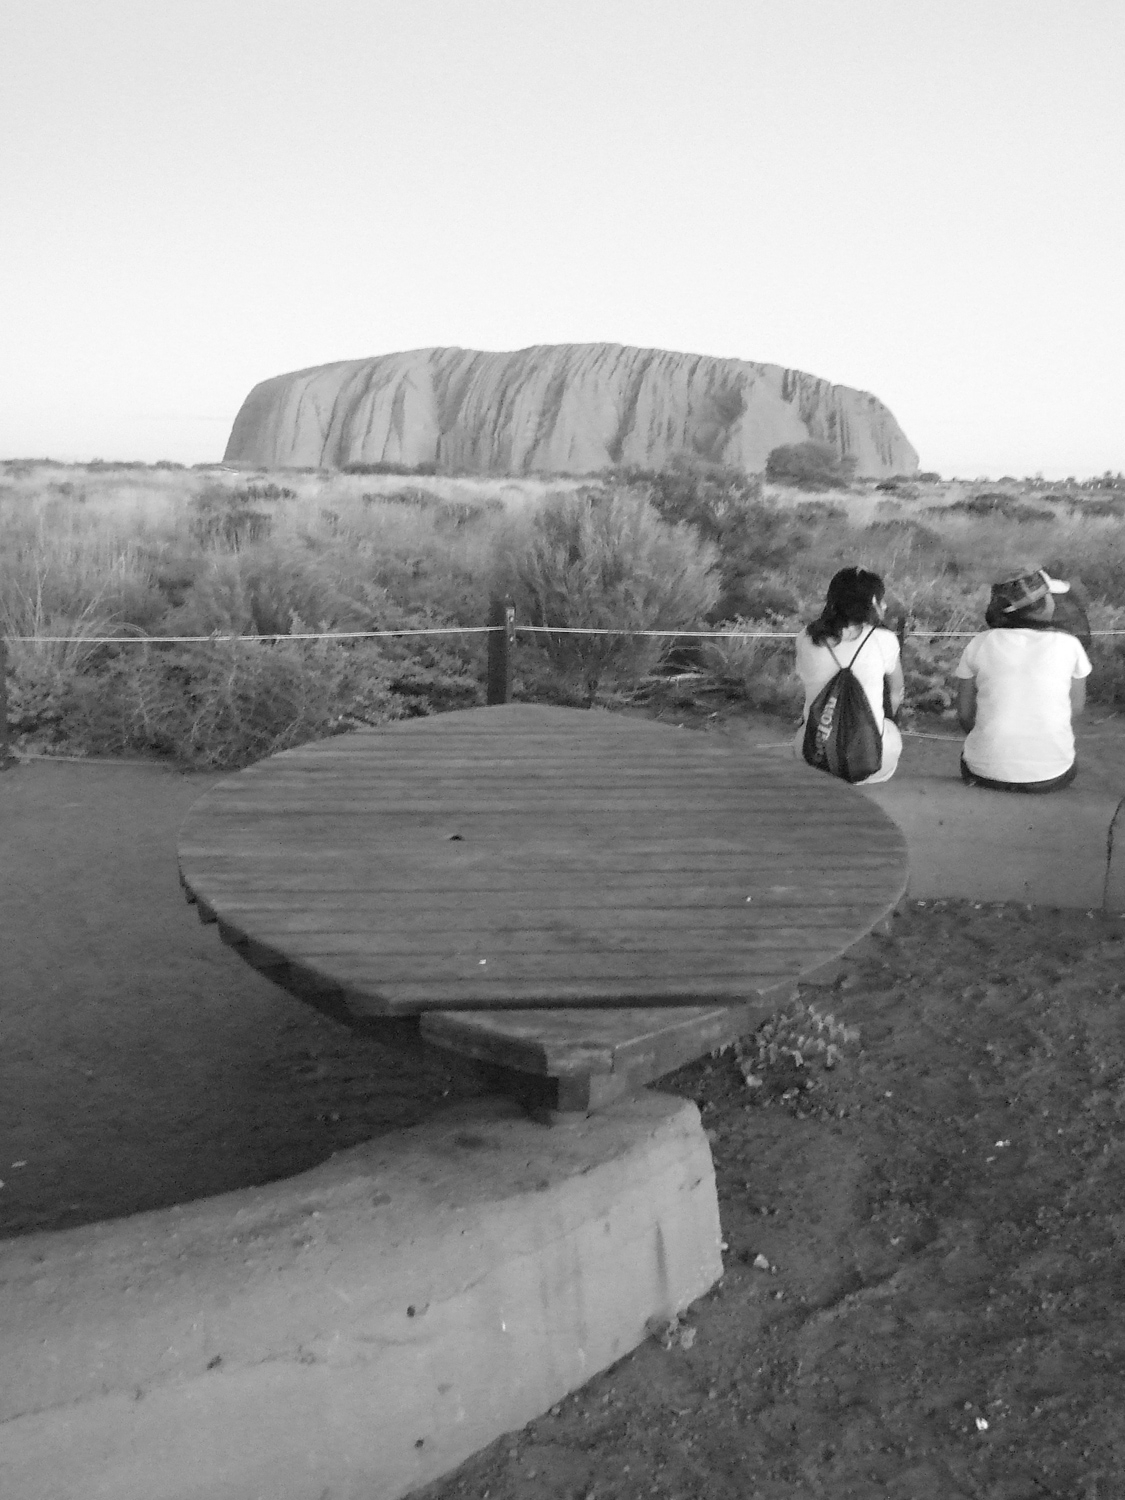 Watching Uluru